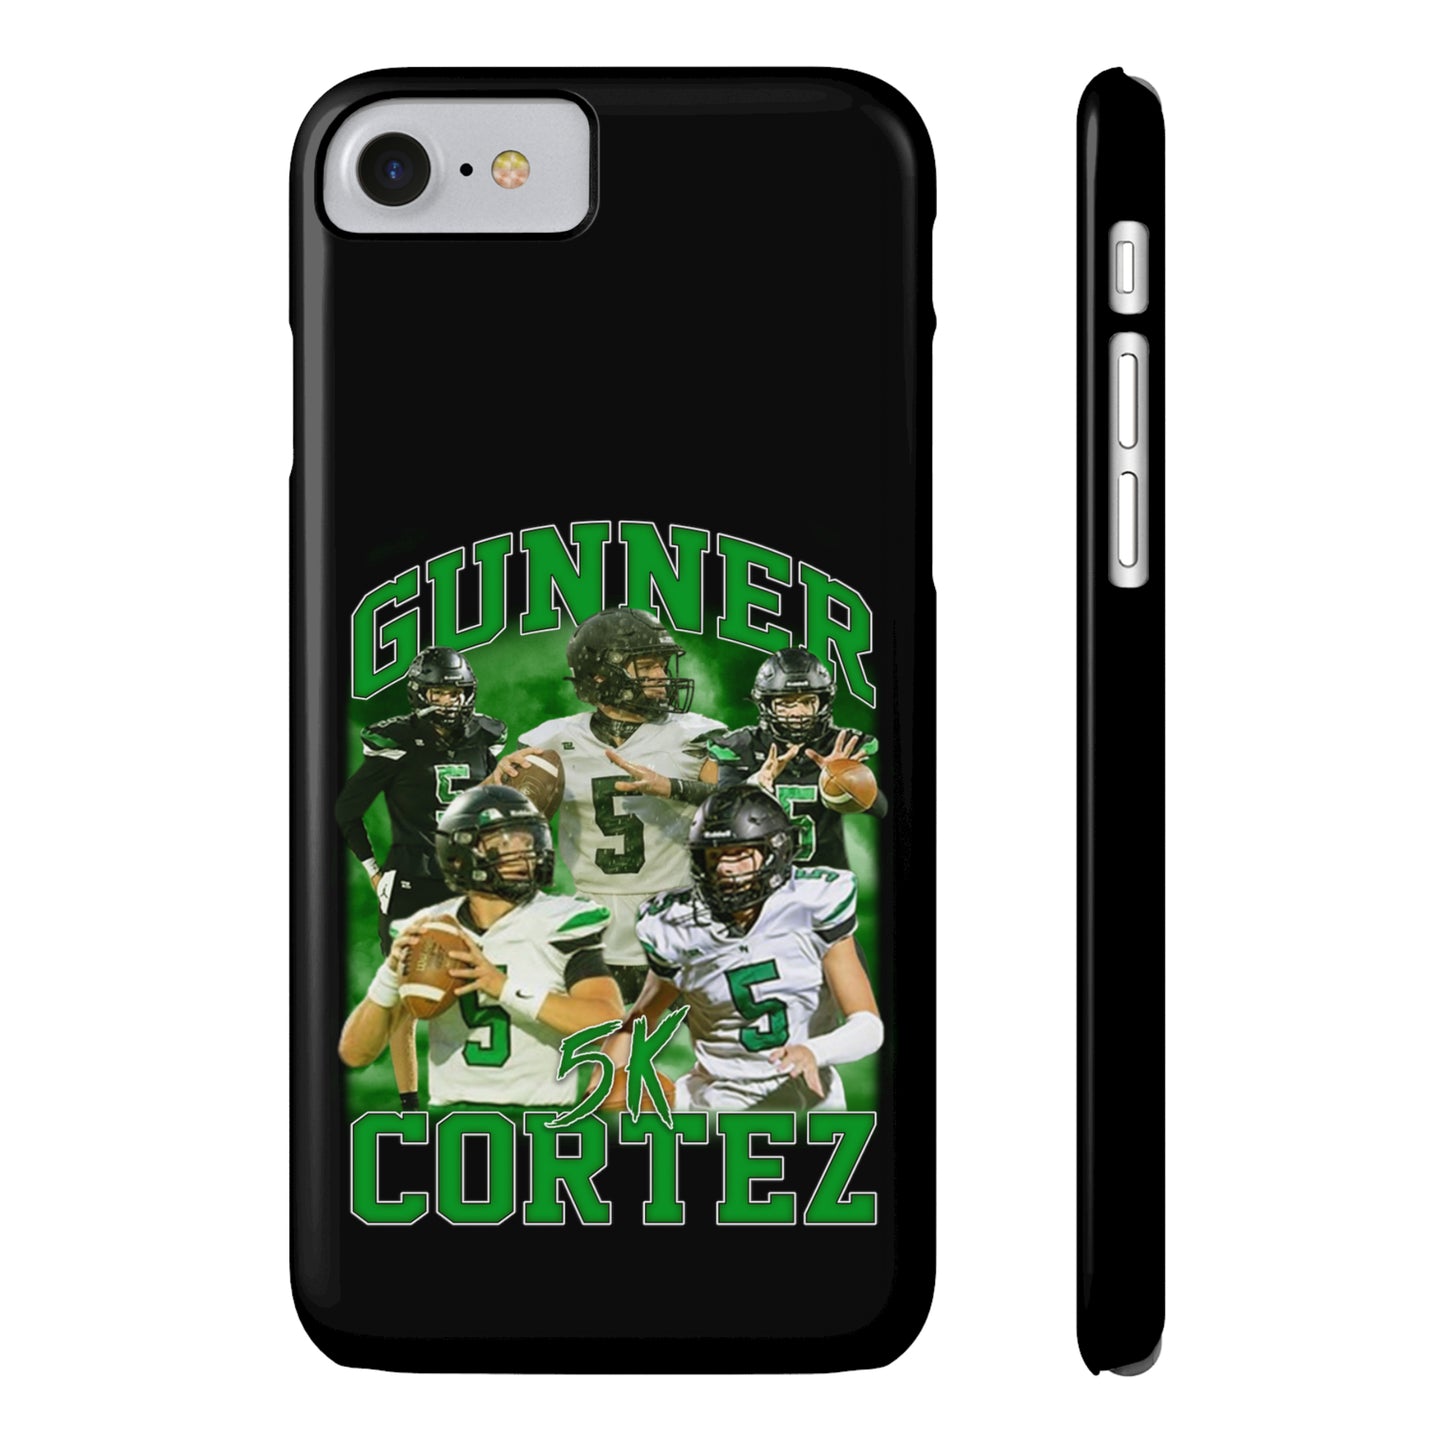 Gunner Cortez Phone Case